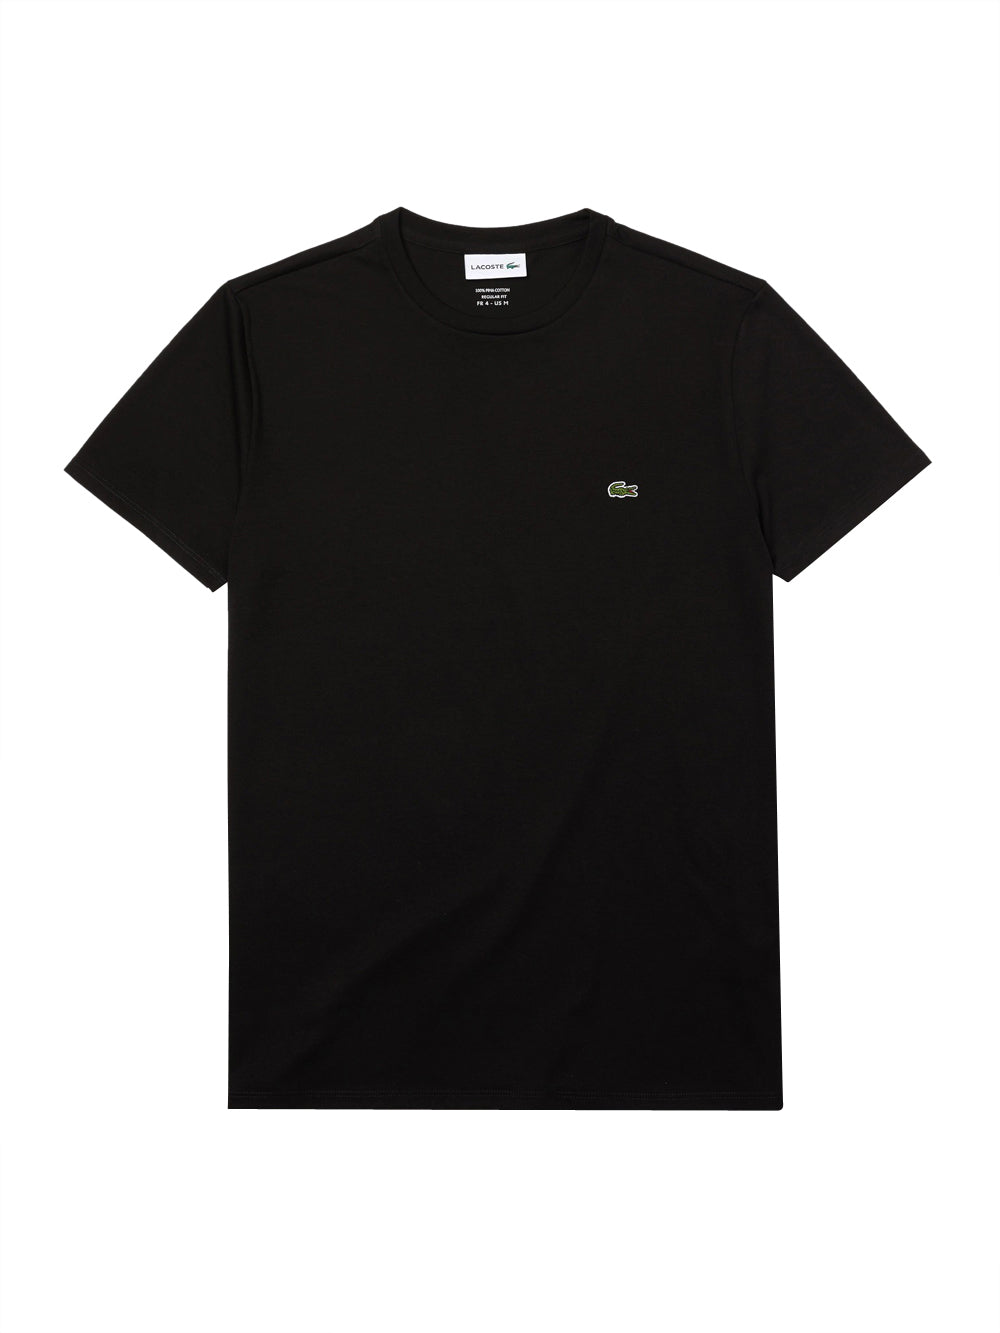 Lacoste T-shirt Uomo TH6709 Nero